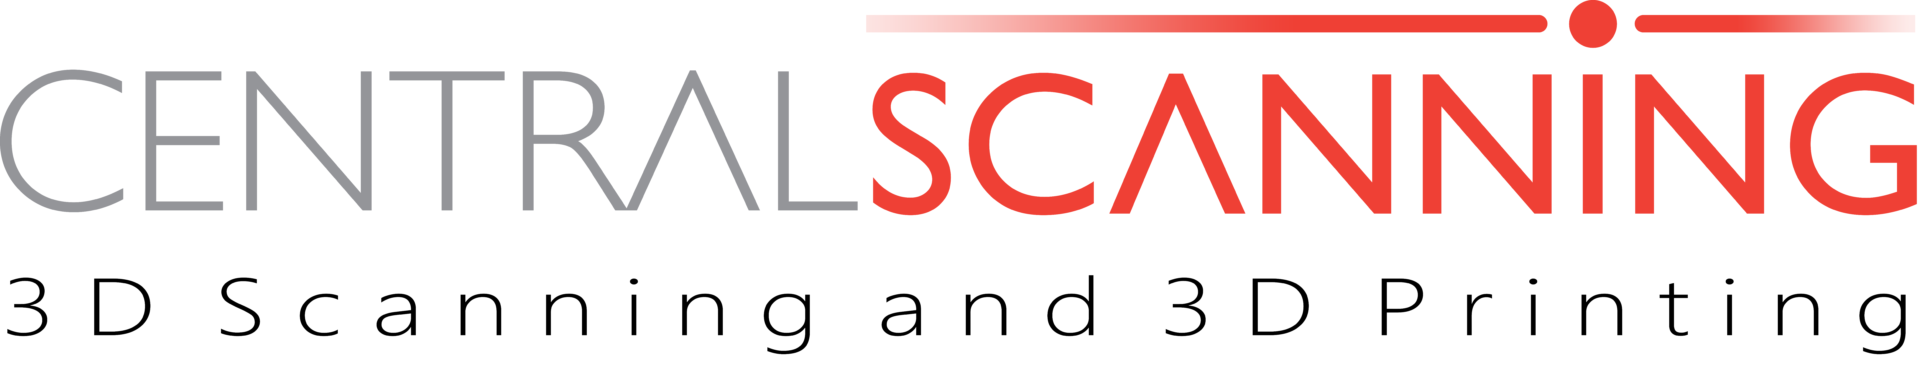 Central-Scanning-Logo-3Dprintscan